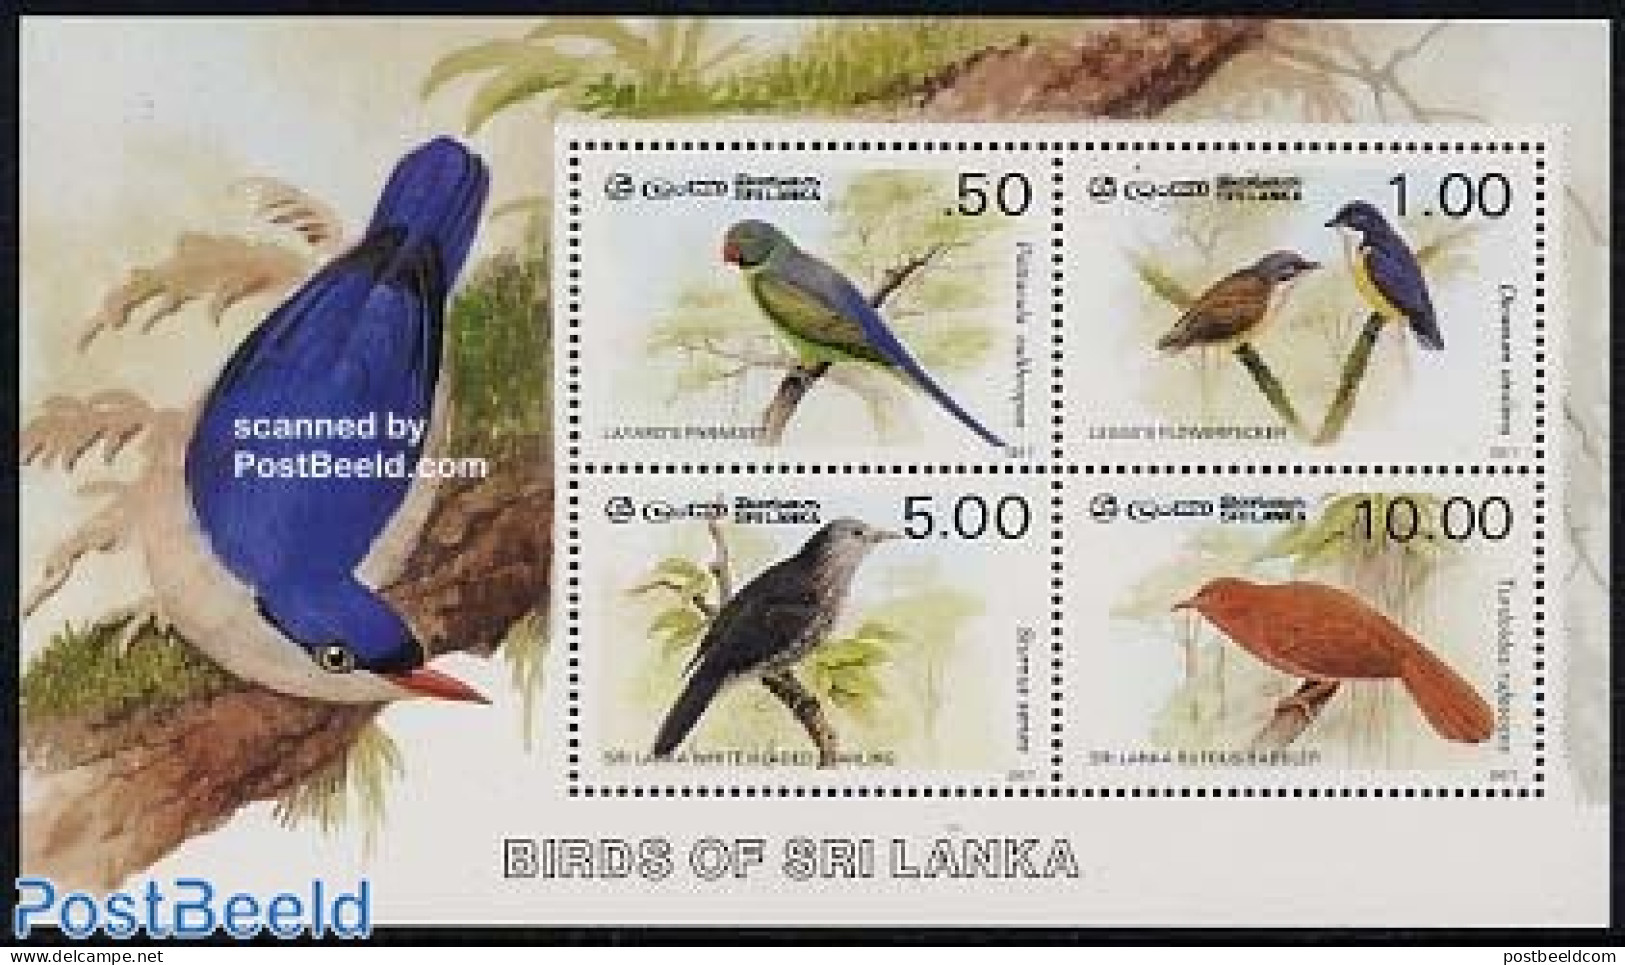 Sri Lanka (Ceylon) 1987 Birds S/s, Mint NH, Nature - Birds - Sri Lanka (Ceylan) (1948-...)